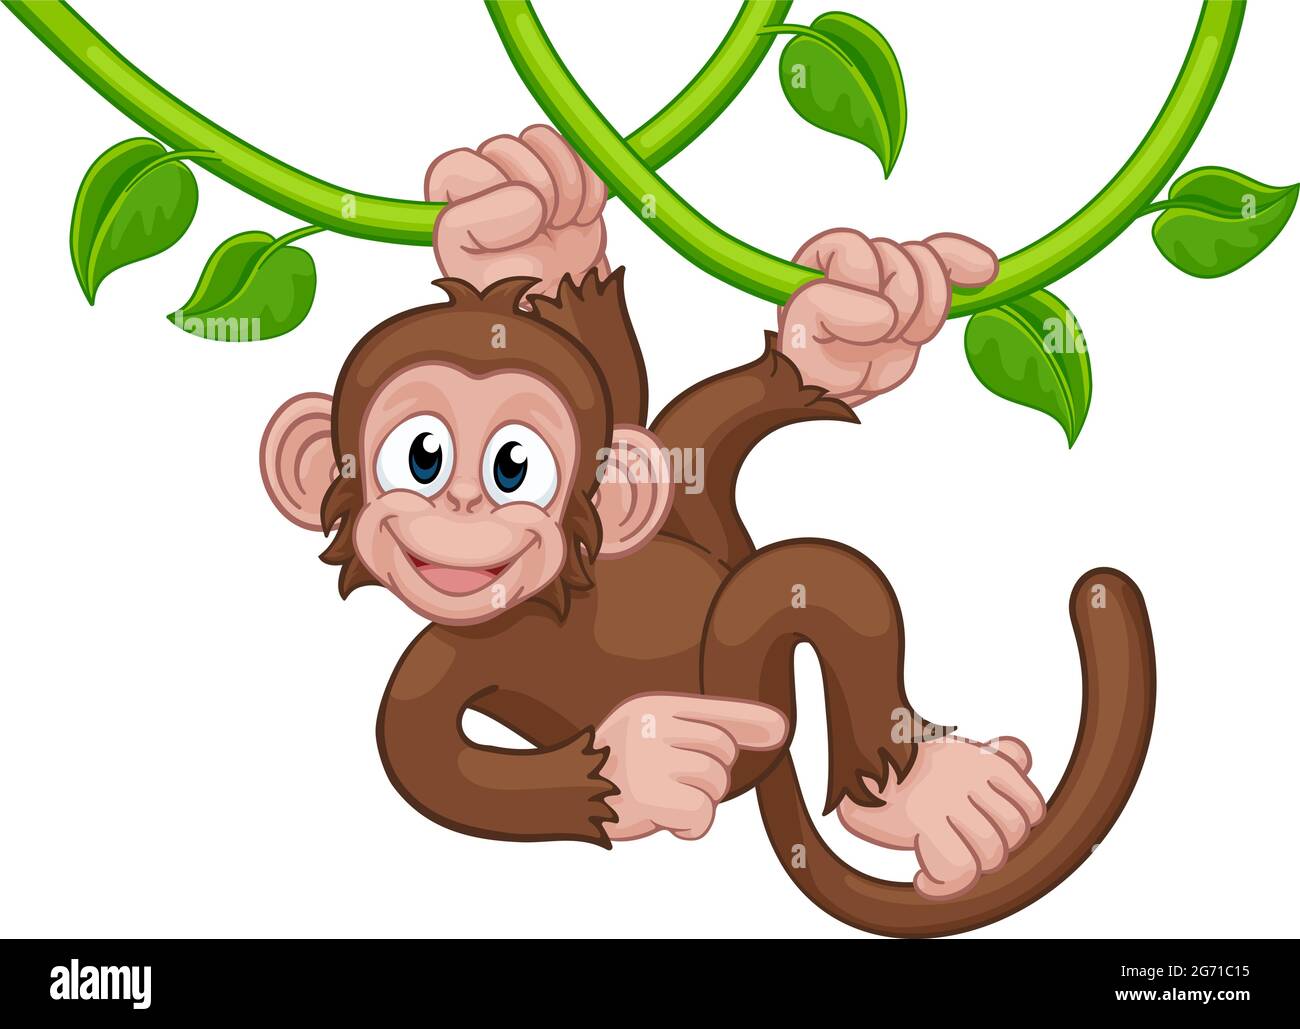 Обезьянка поет. Клипарт орангутанг на дереве рисунок. Обезьяна Синг Синг. Обезьян с травой рисунок.